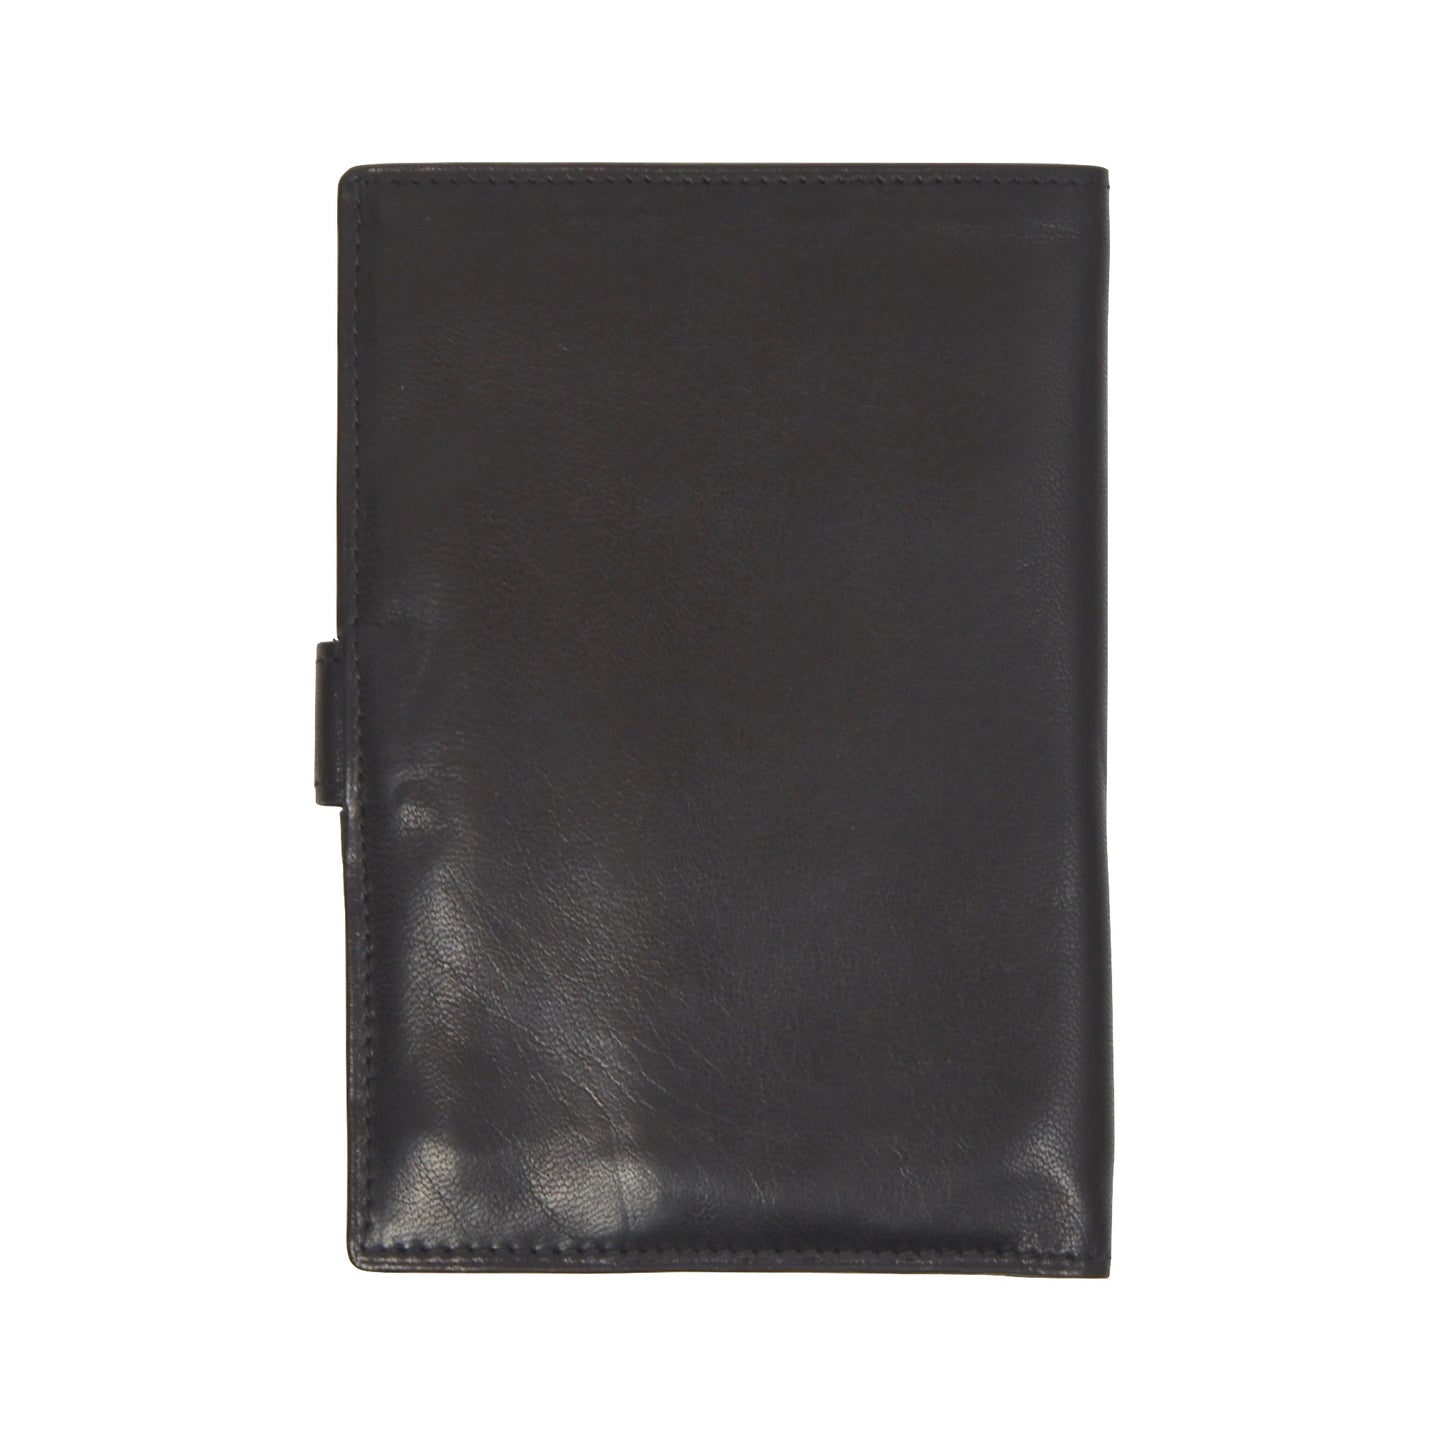 F. Schulz Wien Leather Snap Wallet - Black